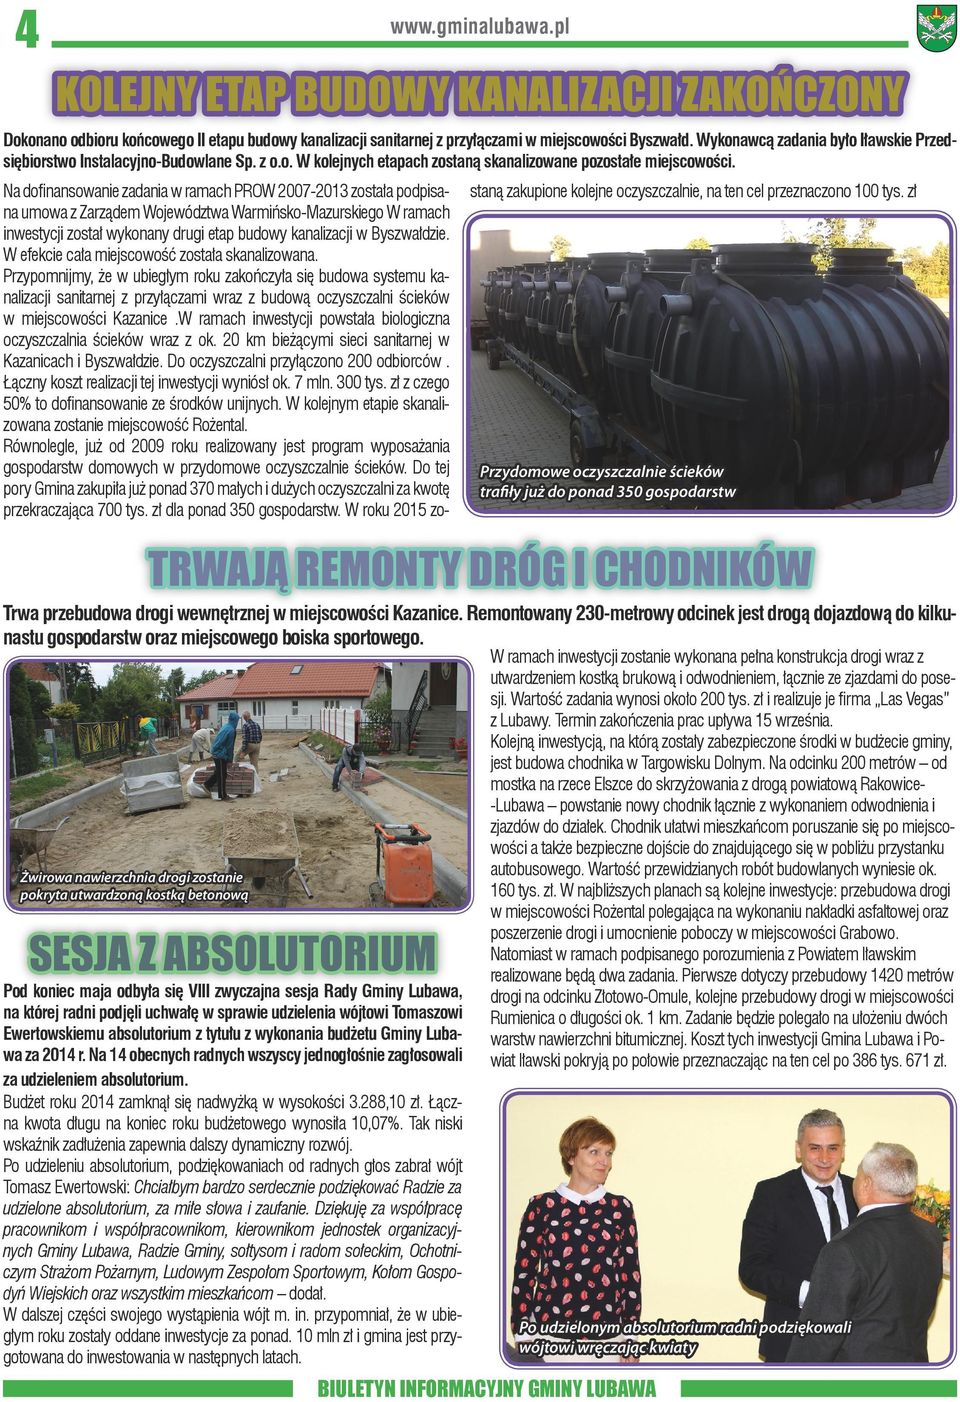 Na dofinansowanie zadania w ramach PROW 2007-2013 została podpisana umowa z Zarządem Województwa Warmińsko-Mazurskiego W ramach inwestycji został wykonany drugi etap budowy kanalizacji w Byszwałdzie.